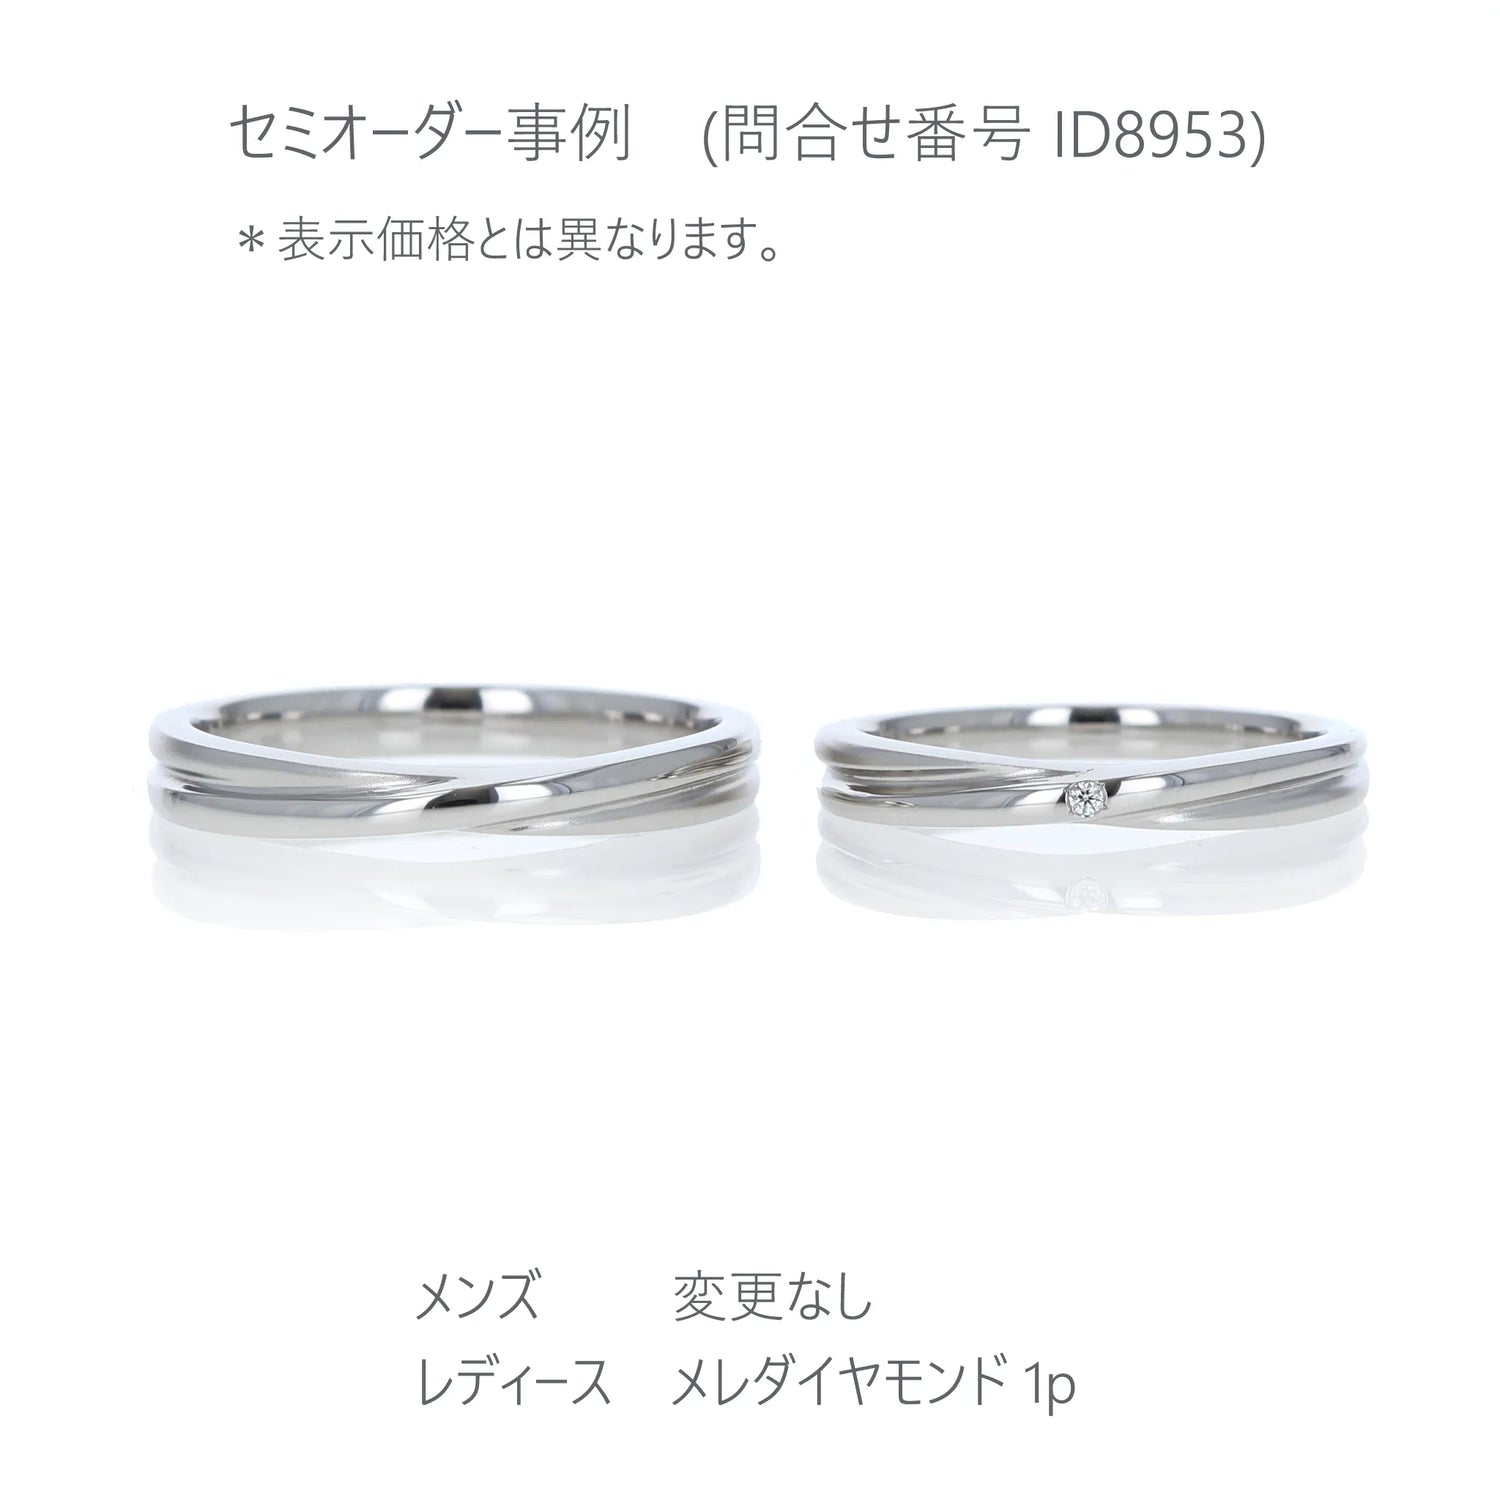 Crossing 光沢とつや消しで表現した結婚指輪 メレダイヤ